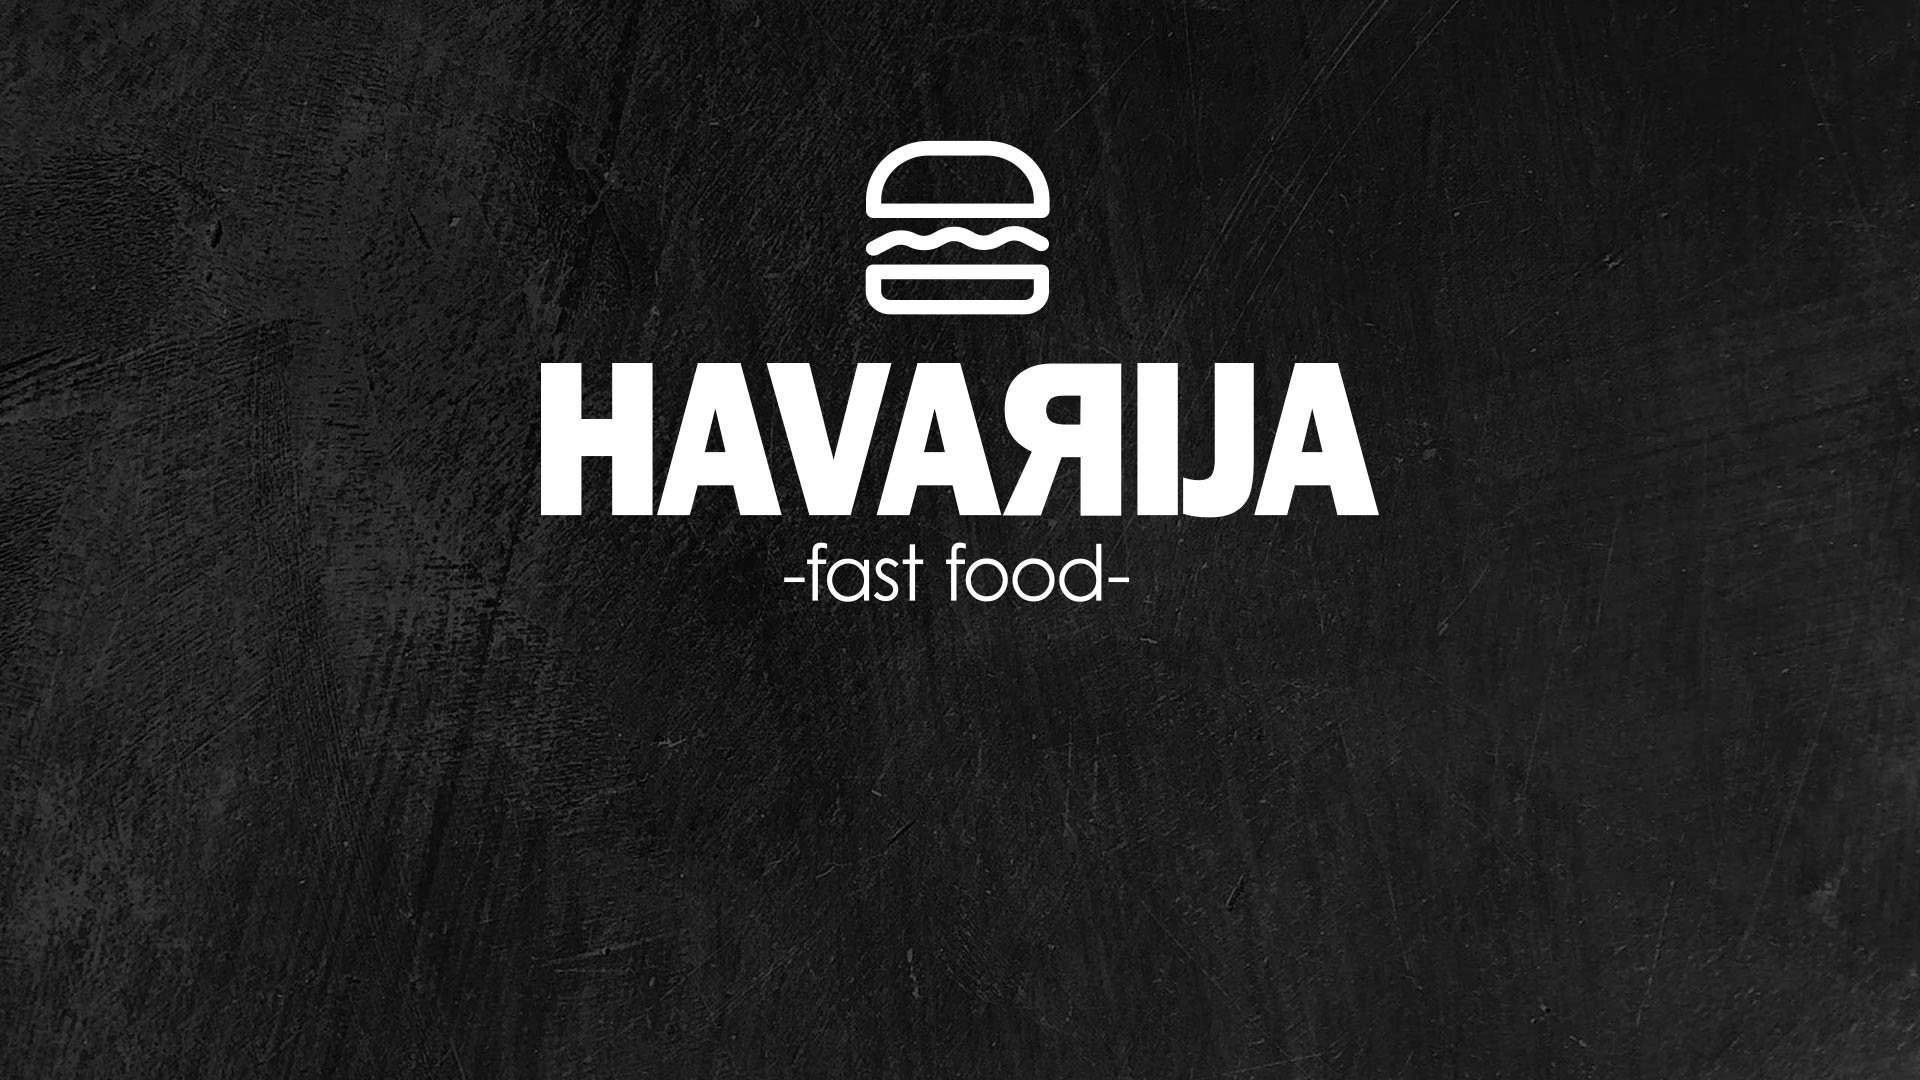 Fast food Havarija | Our story